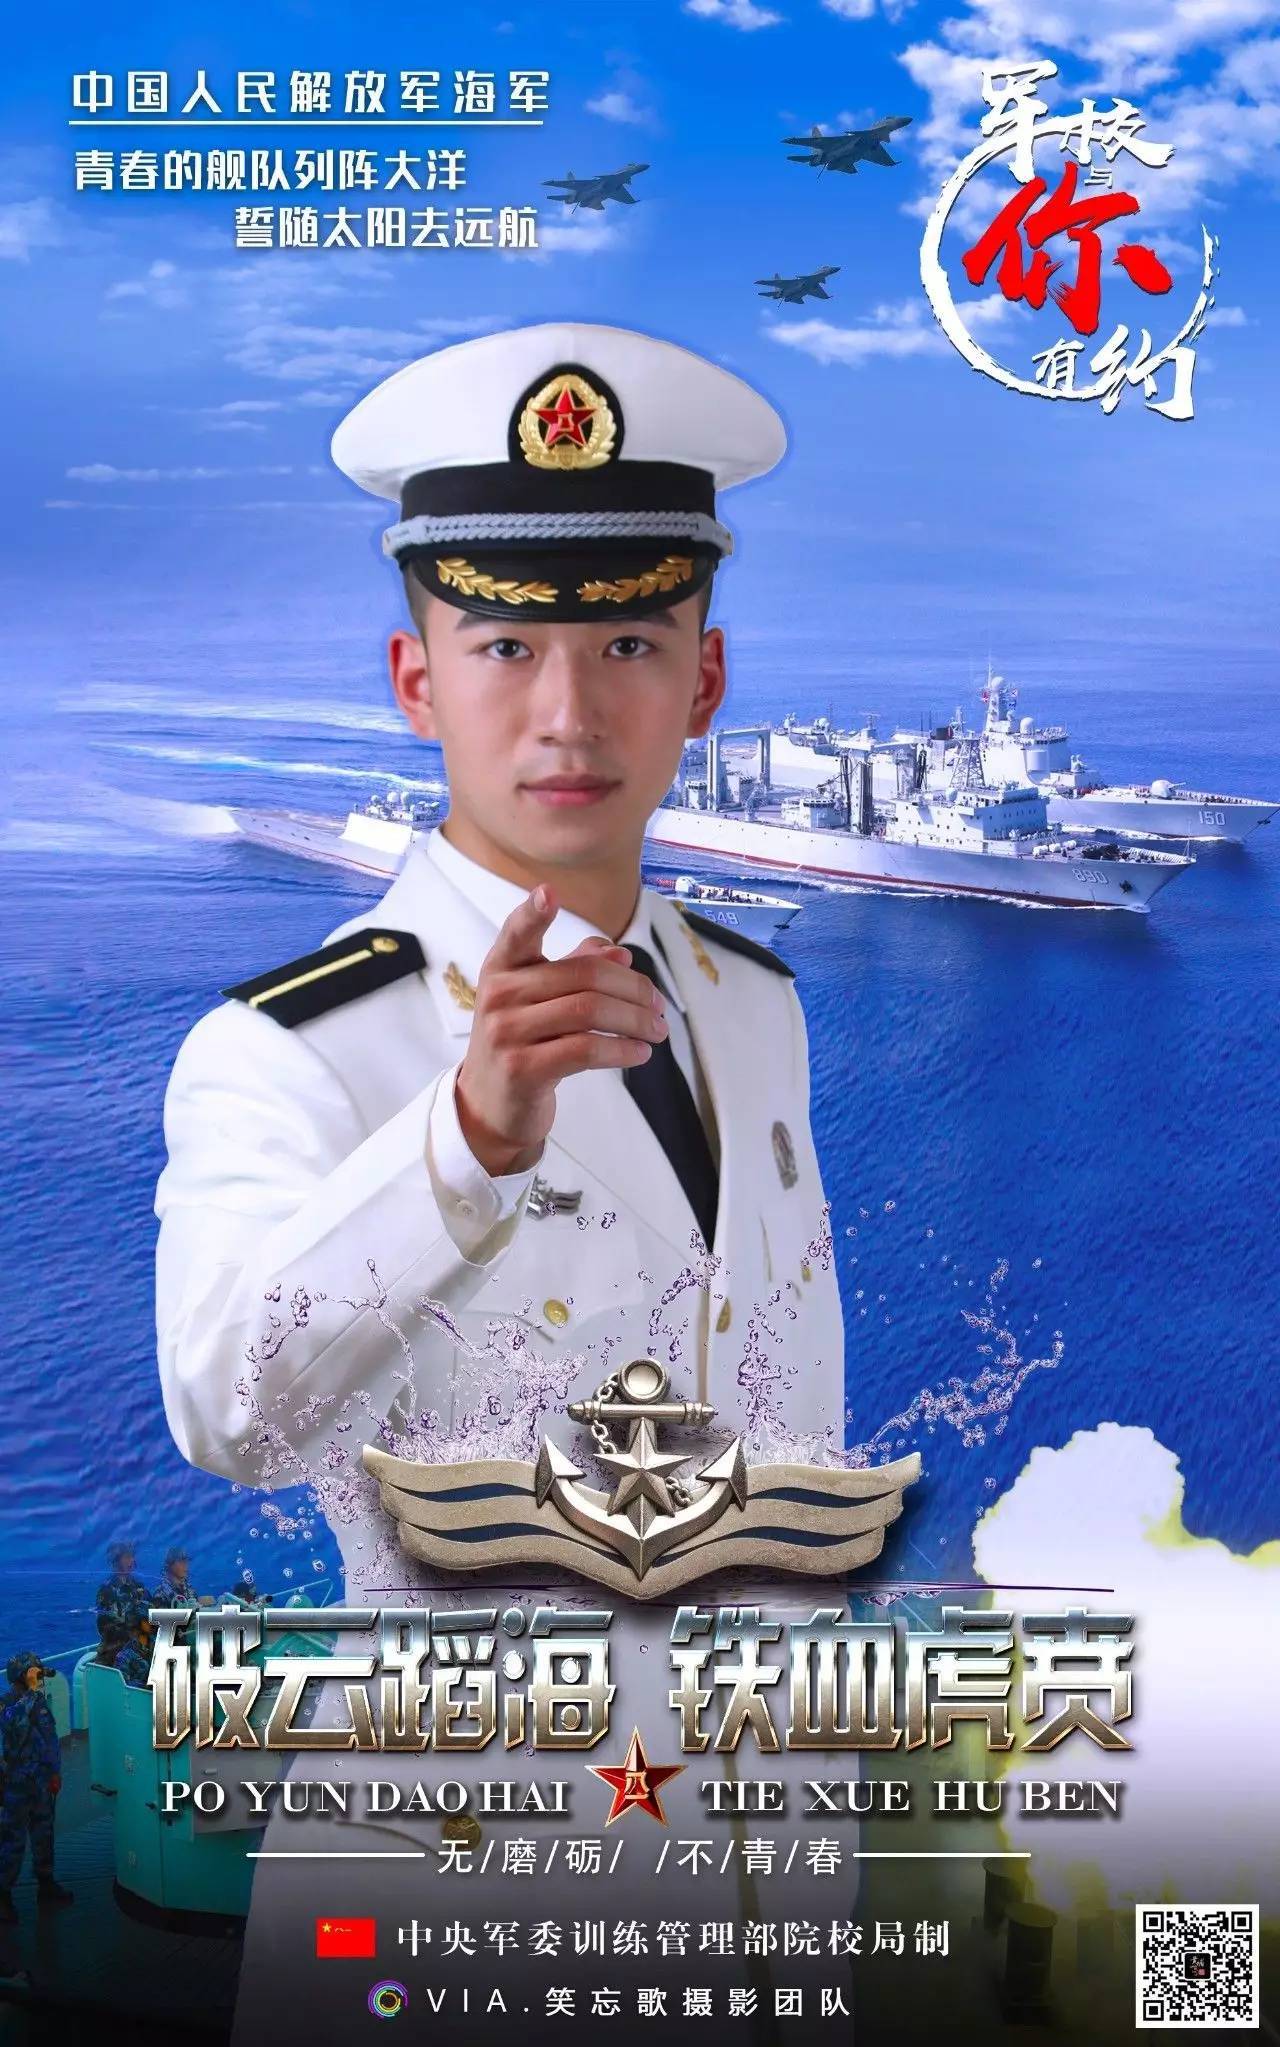 为考生加油!中国军校招生宣传海报震撼来袭